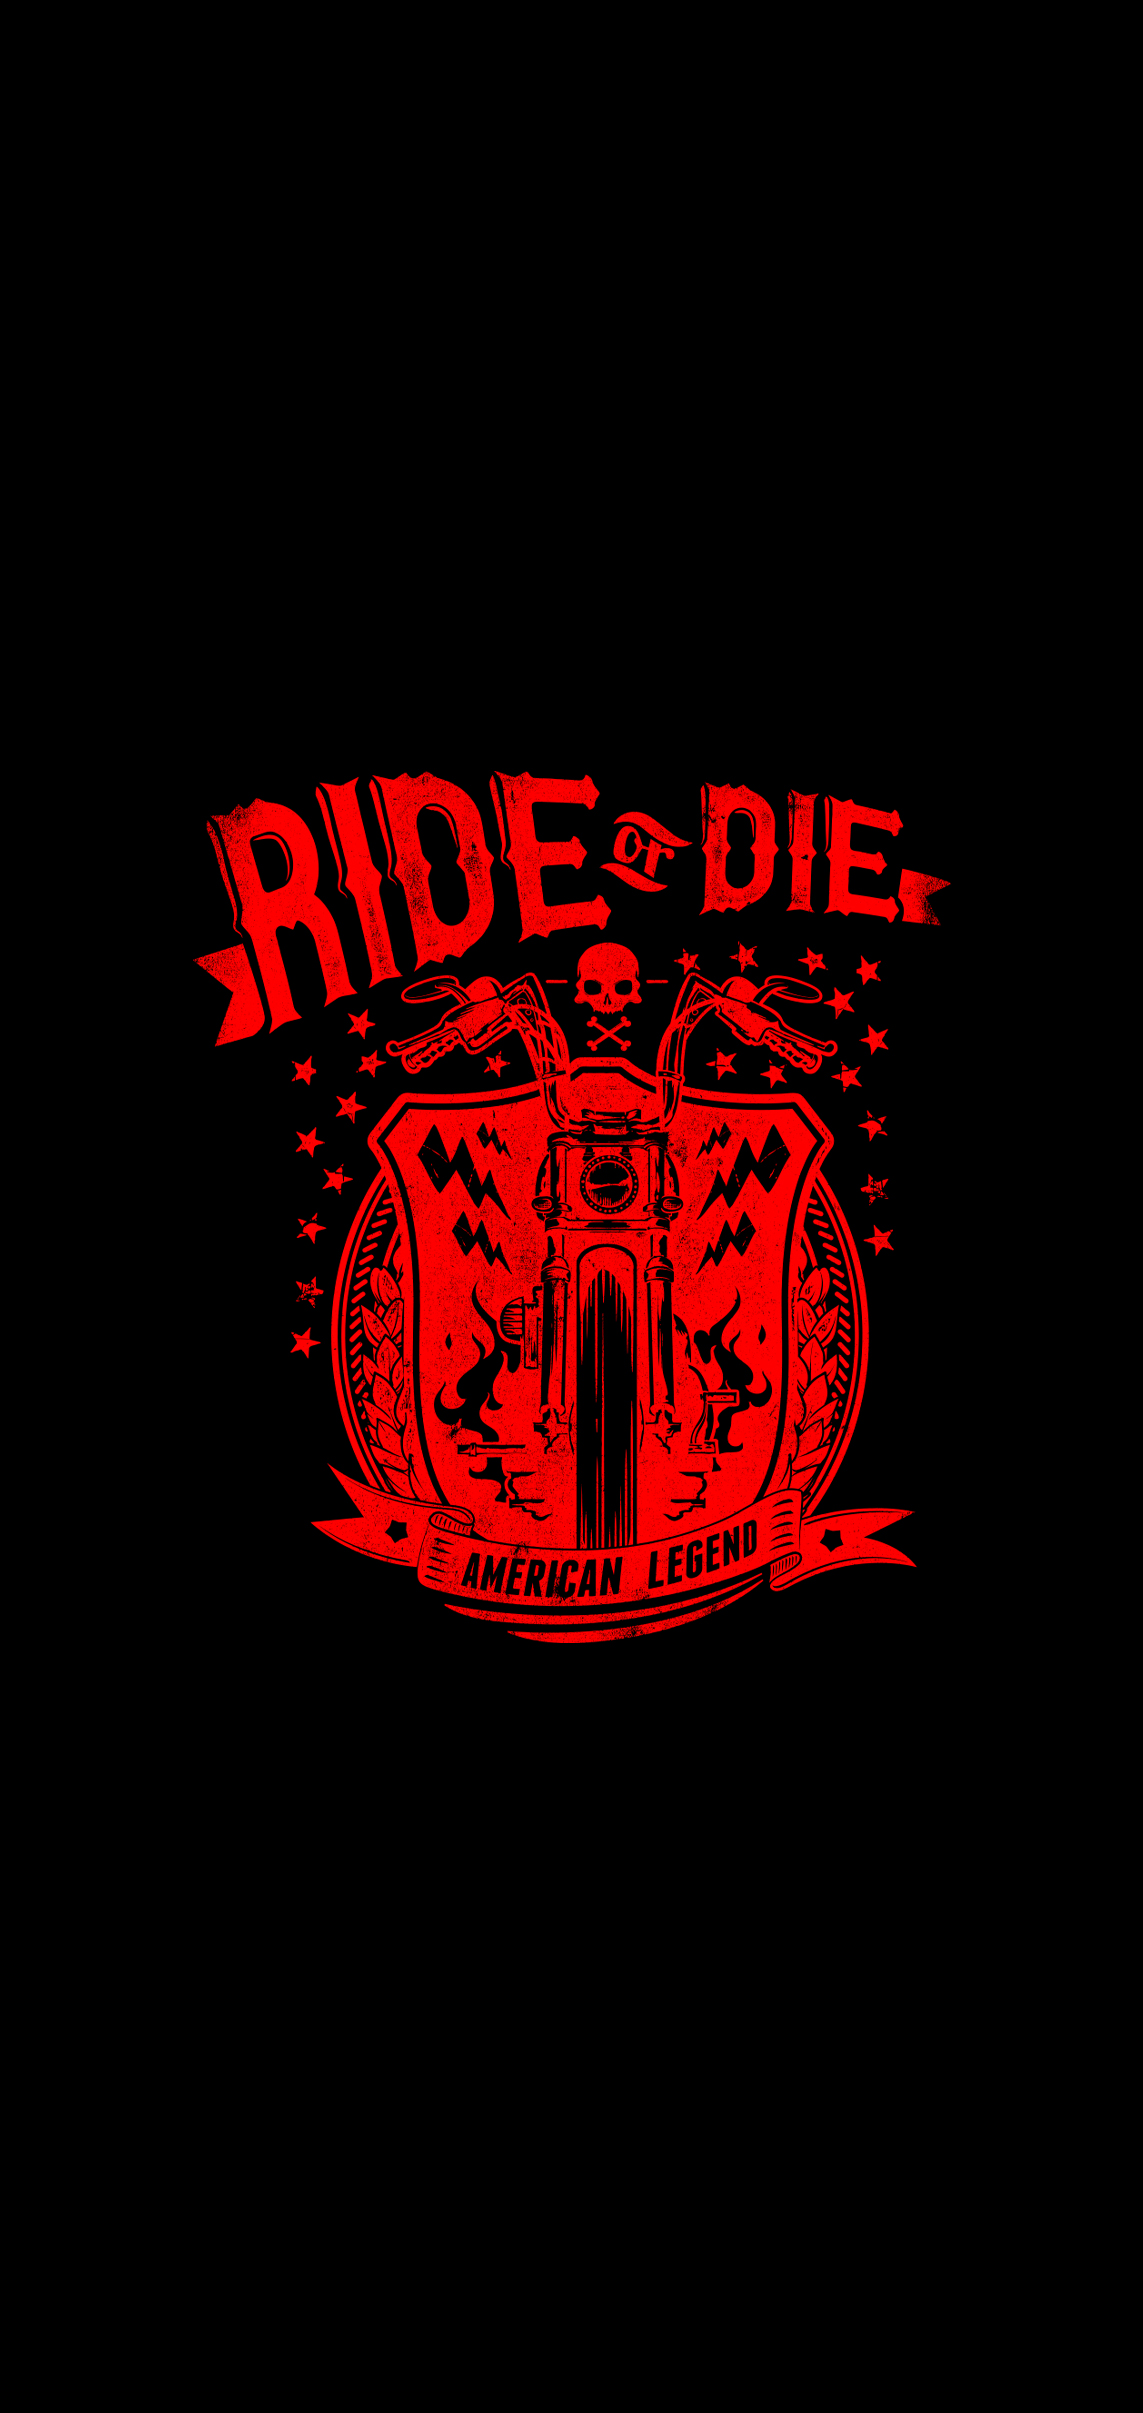 Ride or die black iphone wallpaper